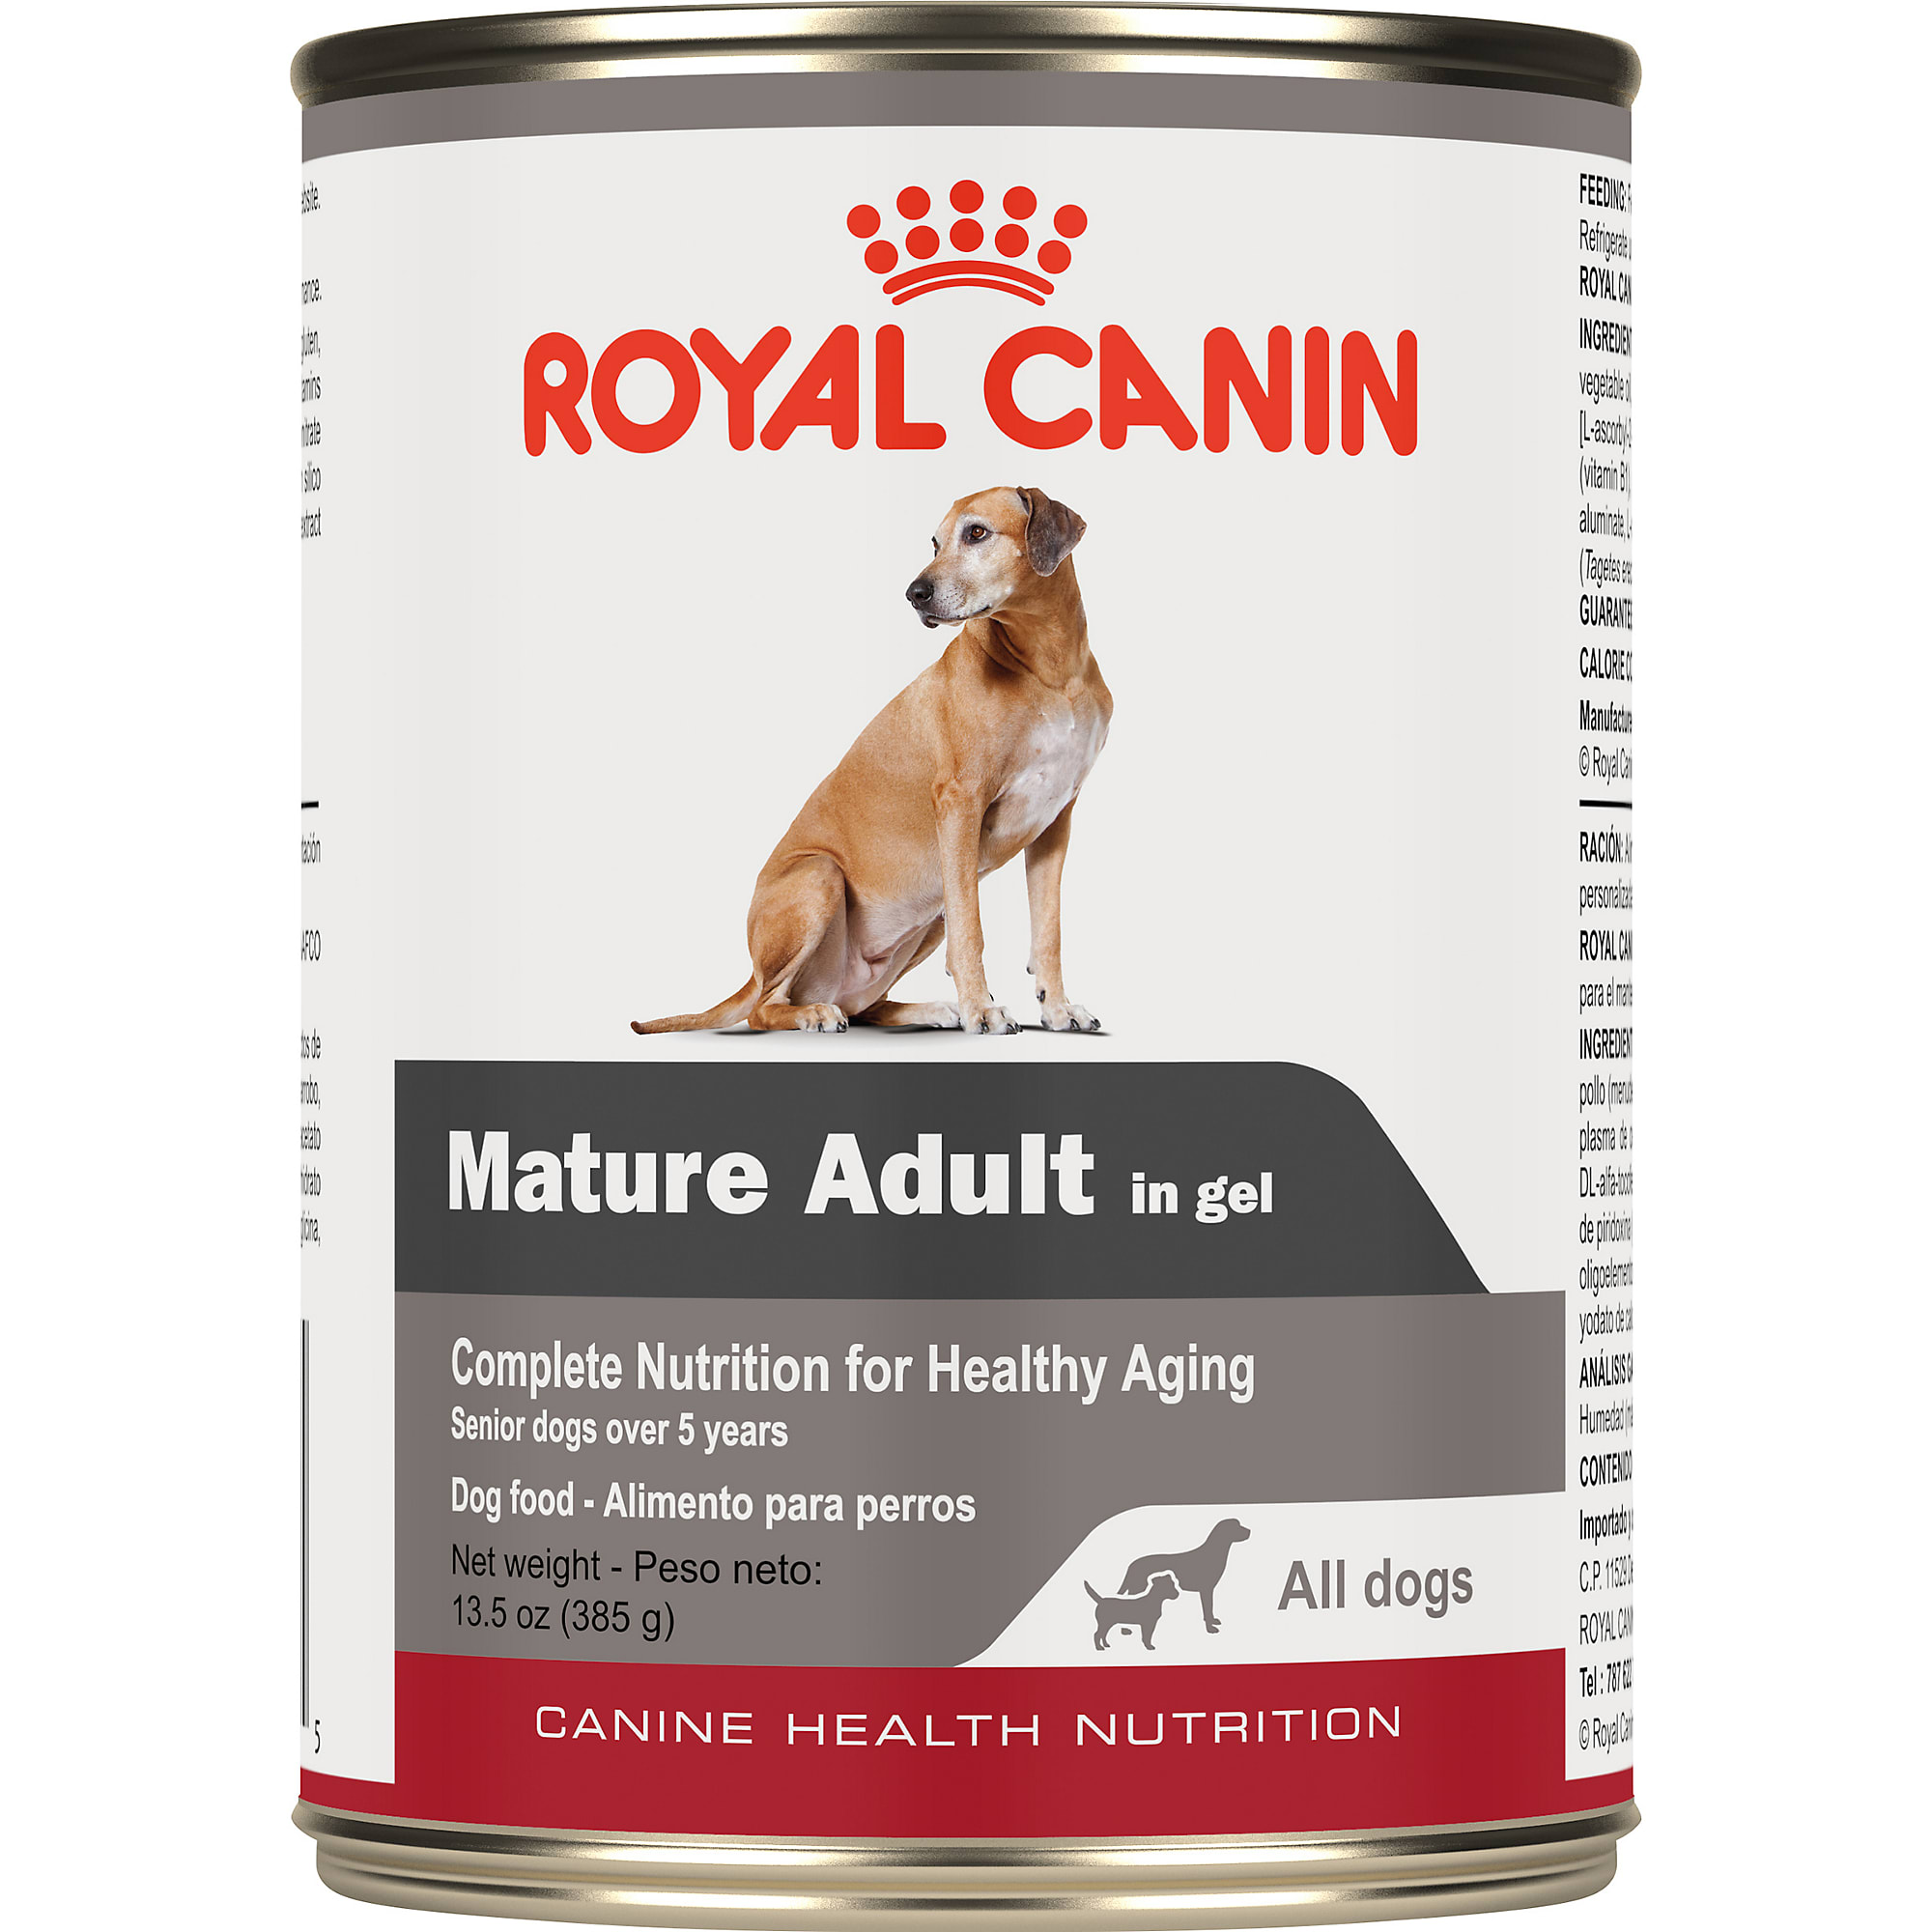 royal canin senior